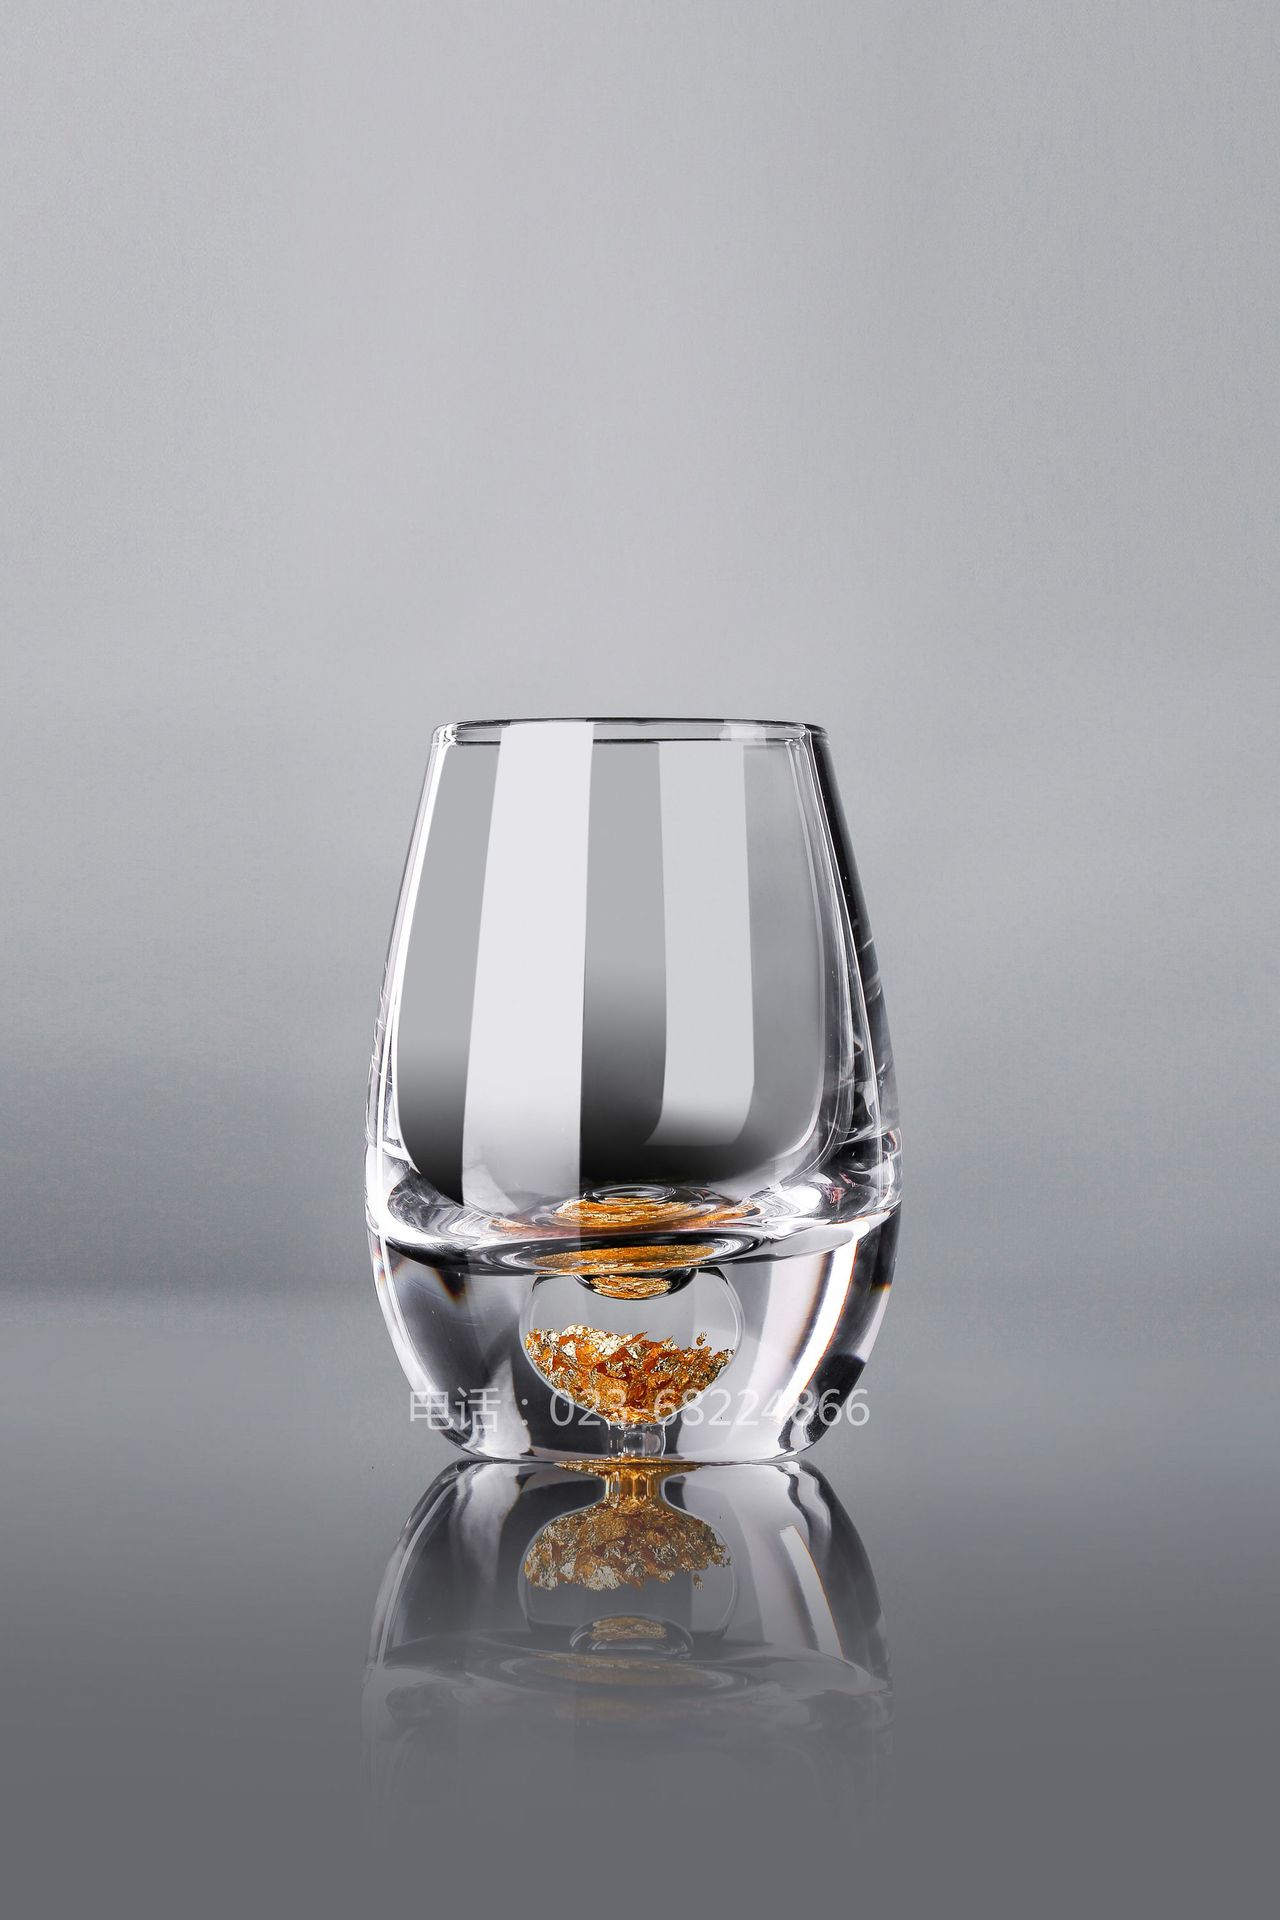 恒晶40ML白酒杯玻璃/小酒杯/品酒杯/广告杯HJ-B1829